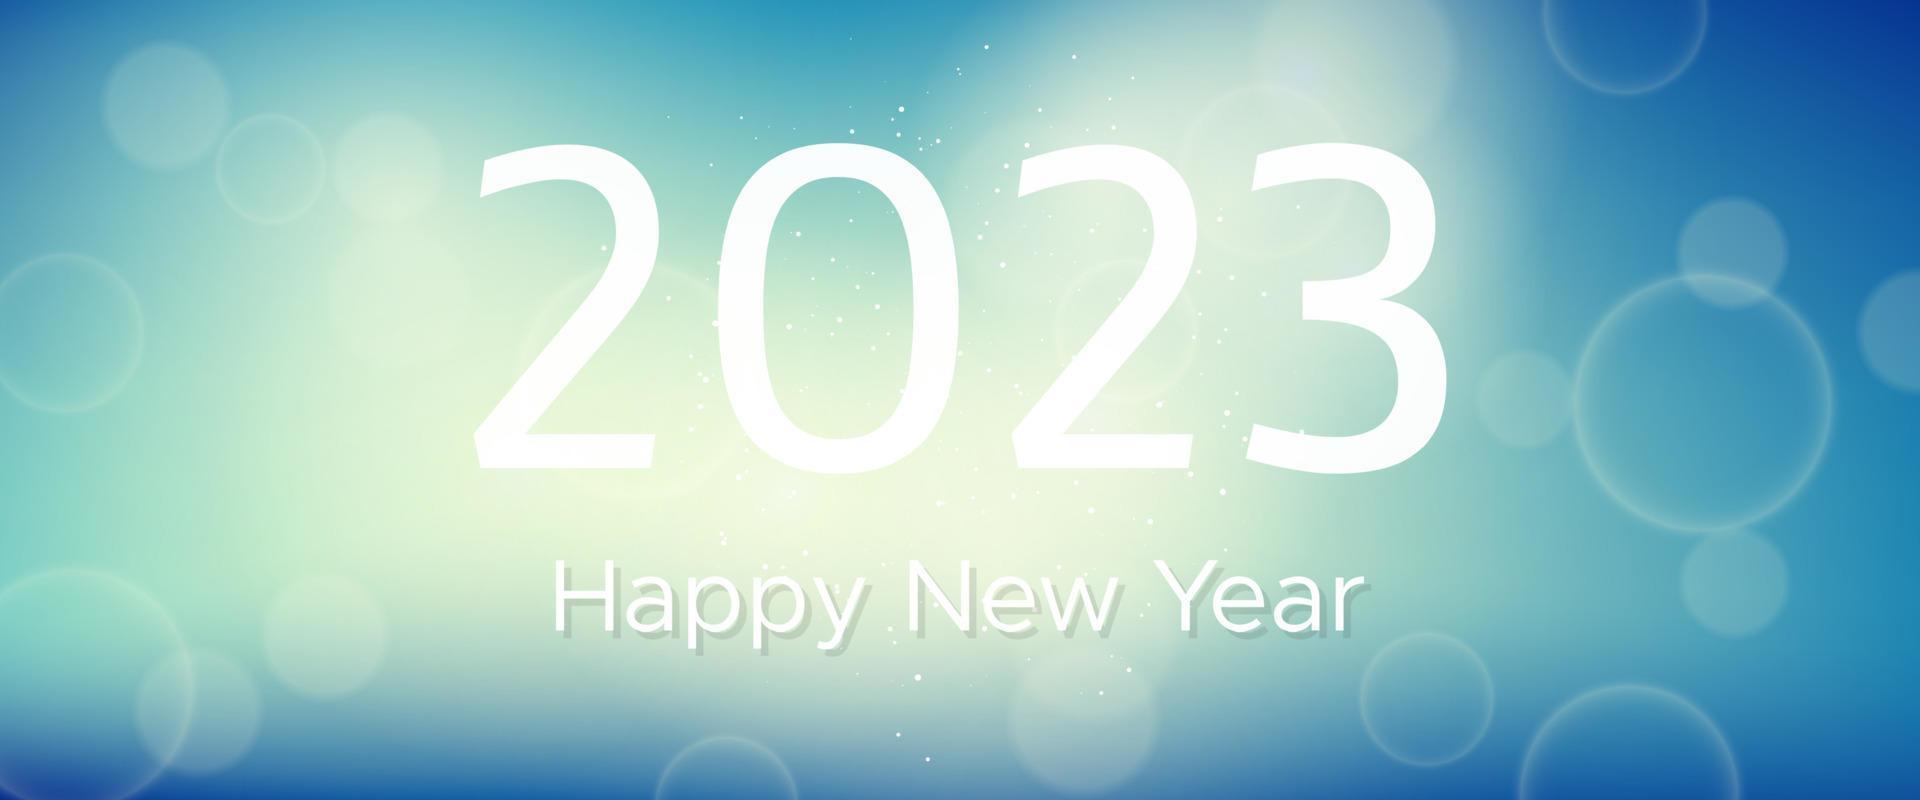 inscripción de feliz año nuevo 2023 sobre fondo borroso. números blancos sobre fondo con confeti, bokeh y destello de lente. ilustración vectorial vector